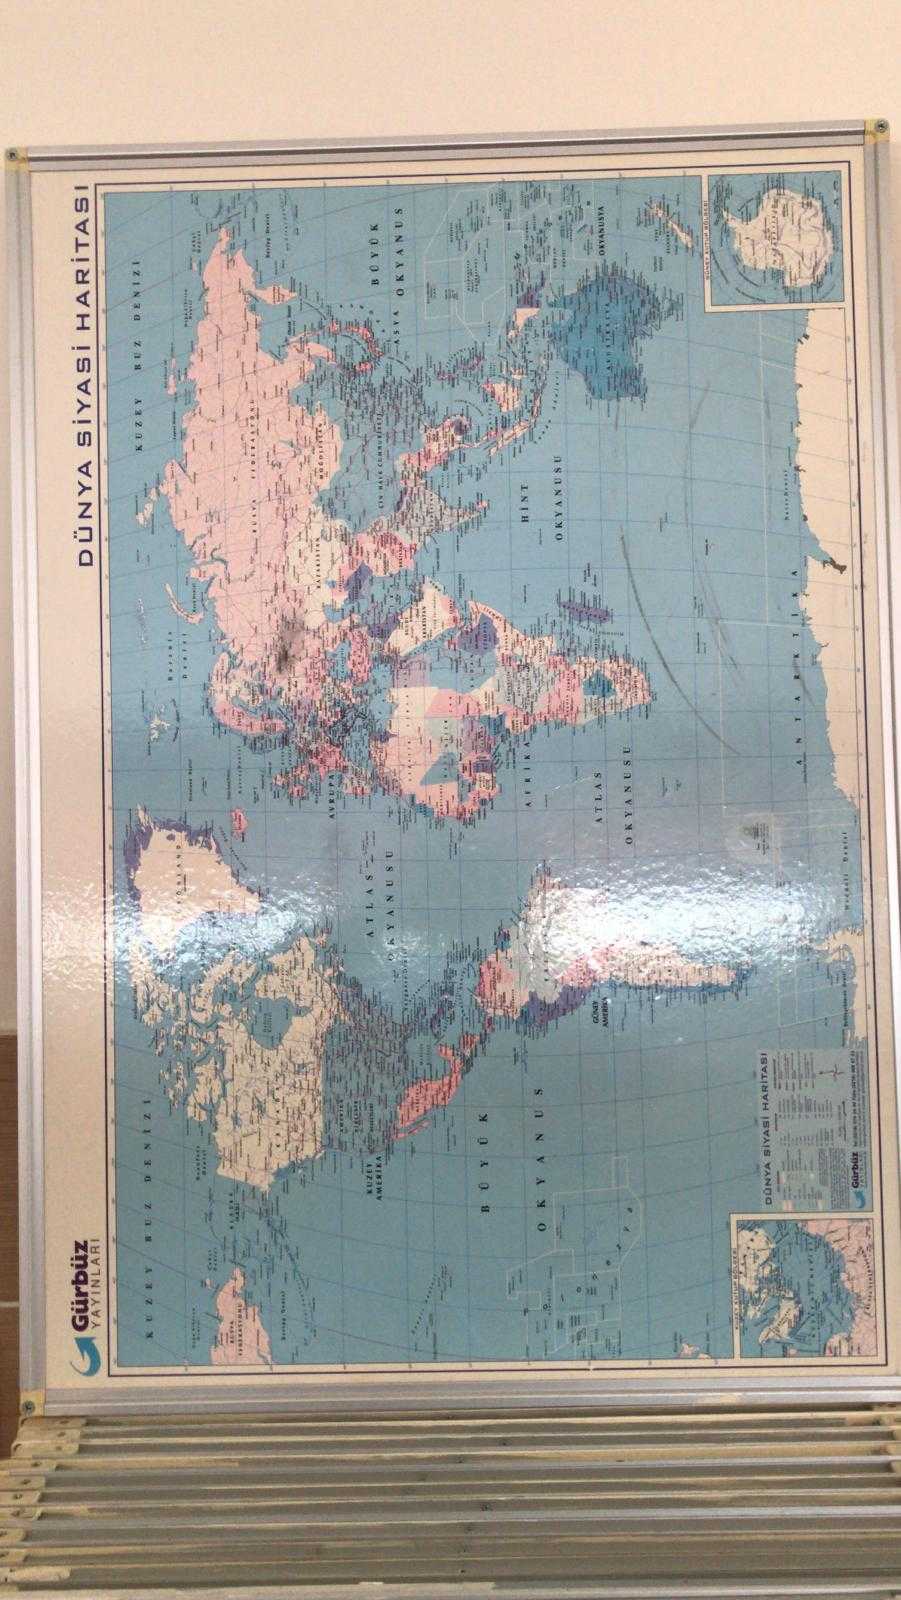 Harita